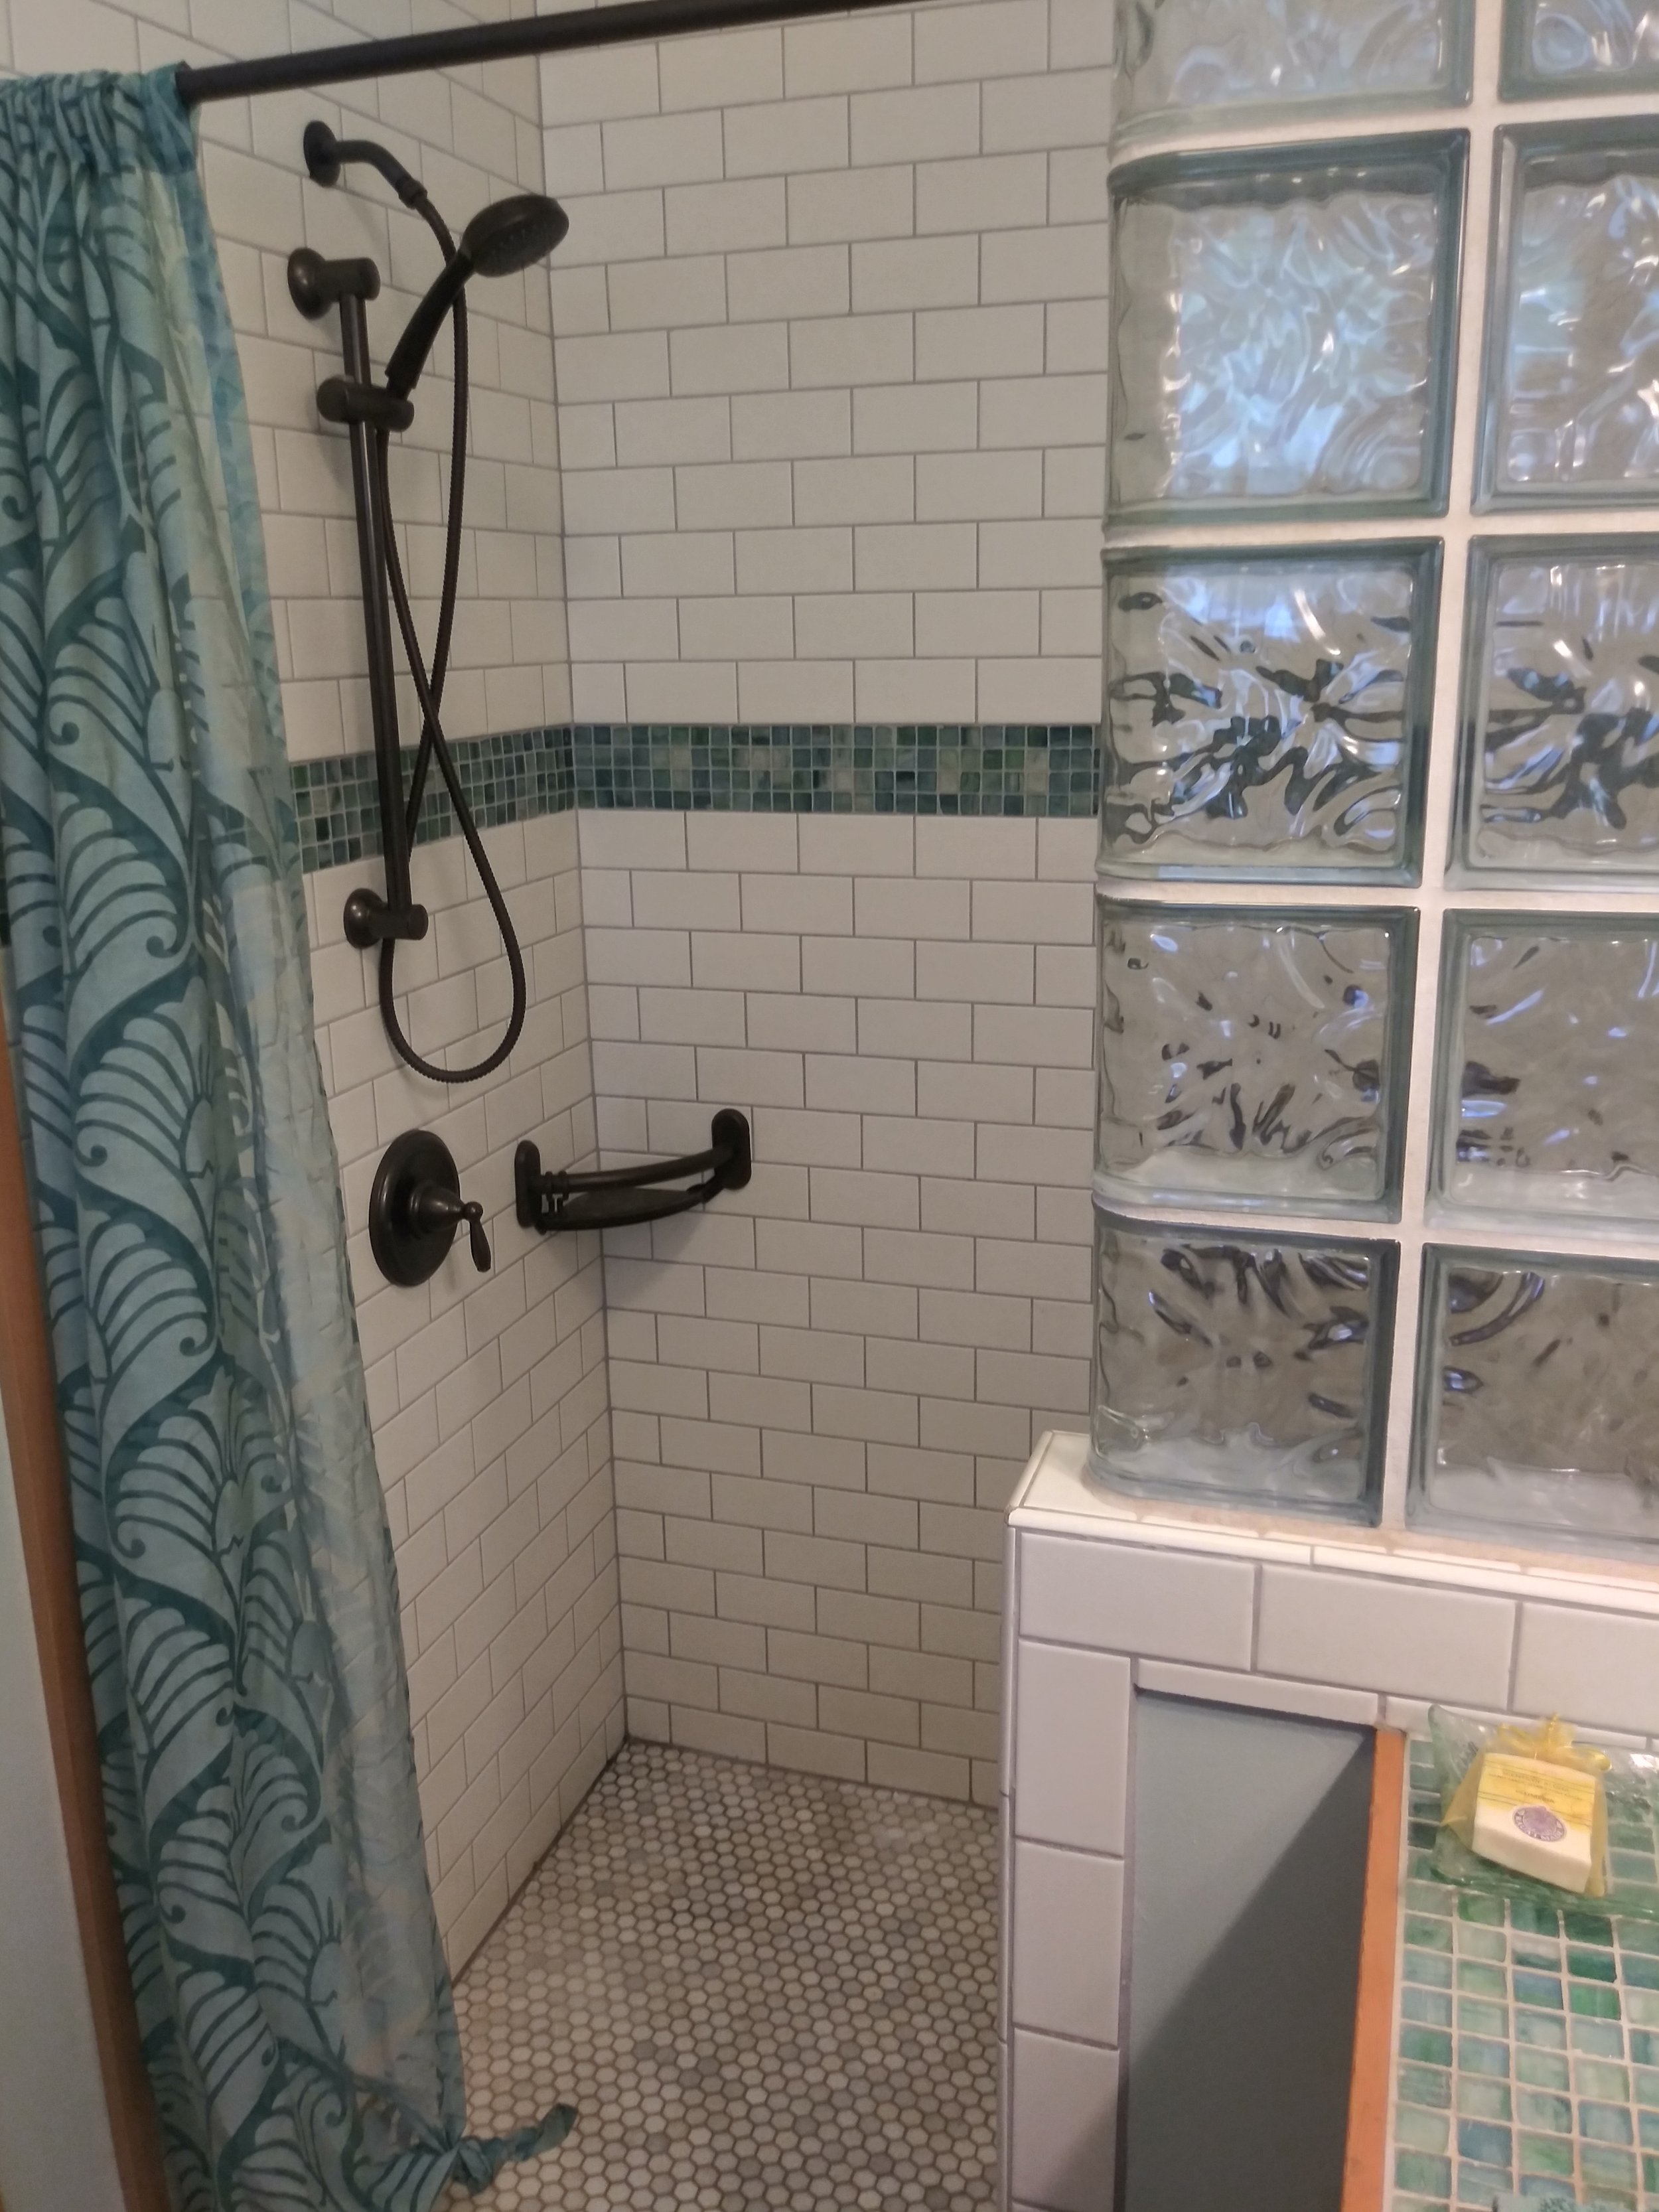 KSWPF tiled shower.jpg